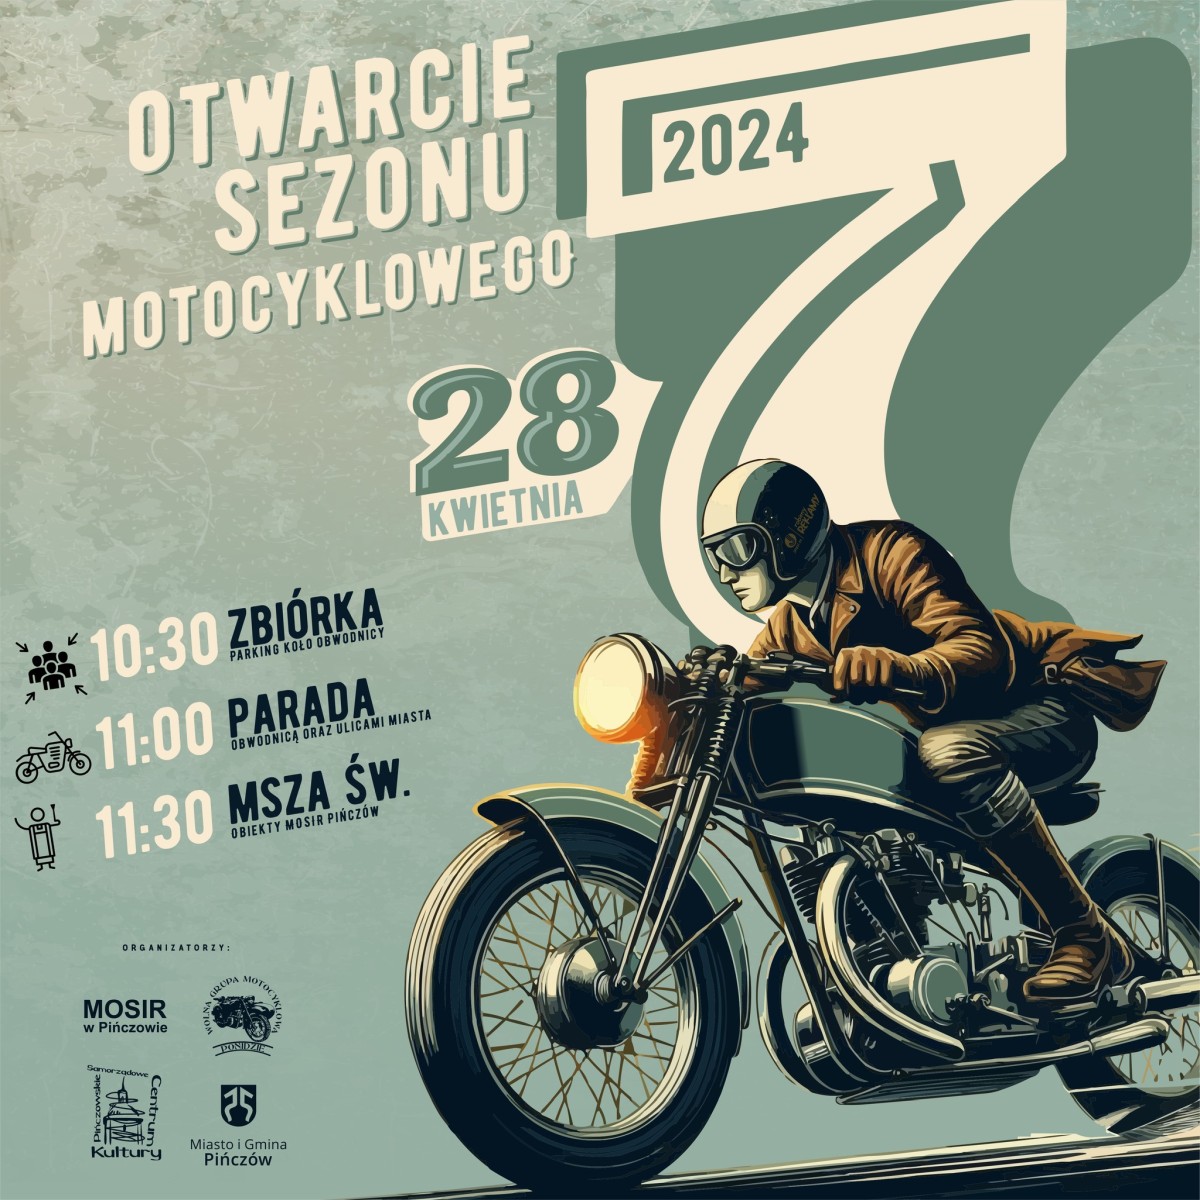 Wolna Grupa Motocyklowa Ponidzie zaprasza w niedziel, 28 <br />
kwietnia 2024 roku wszystkich entuzjastw i mionikw motocykli na <br />
wyjtkowe wydarzenie - Rozpoczcie Sezonu Motocyklowego 2024 w <br />
Piczowie. 